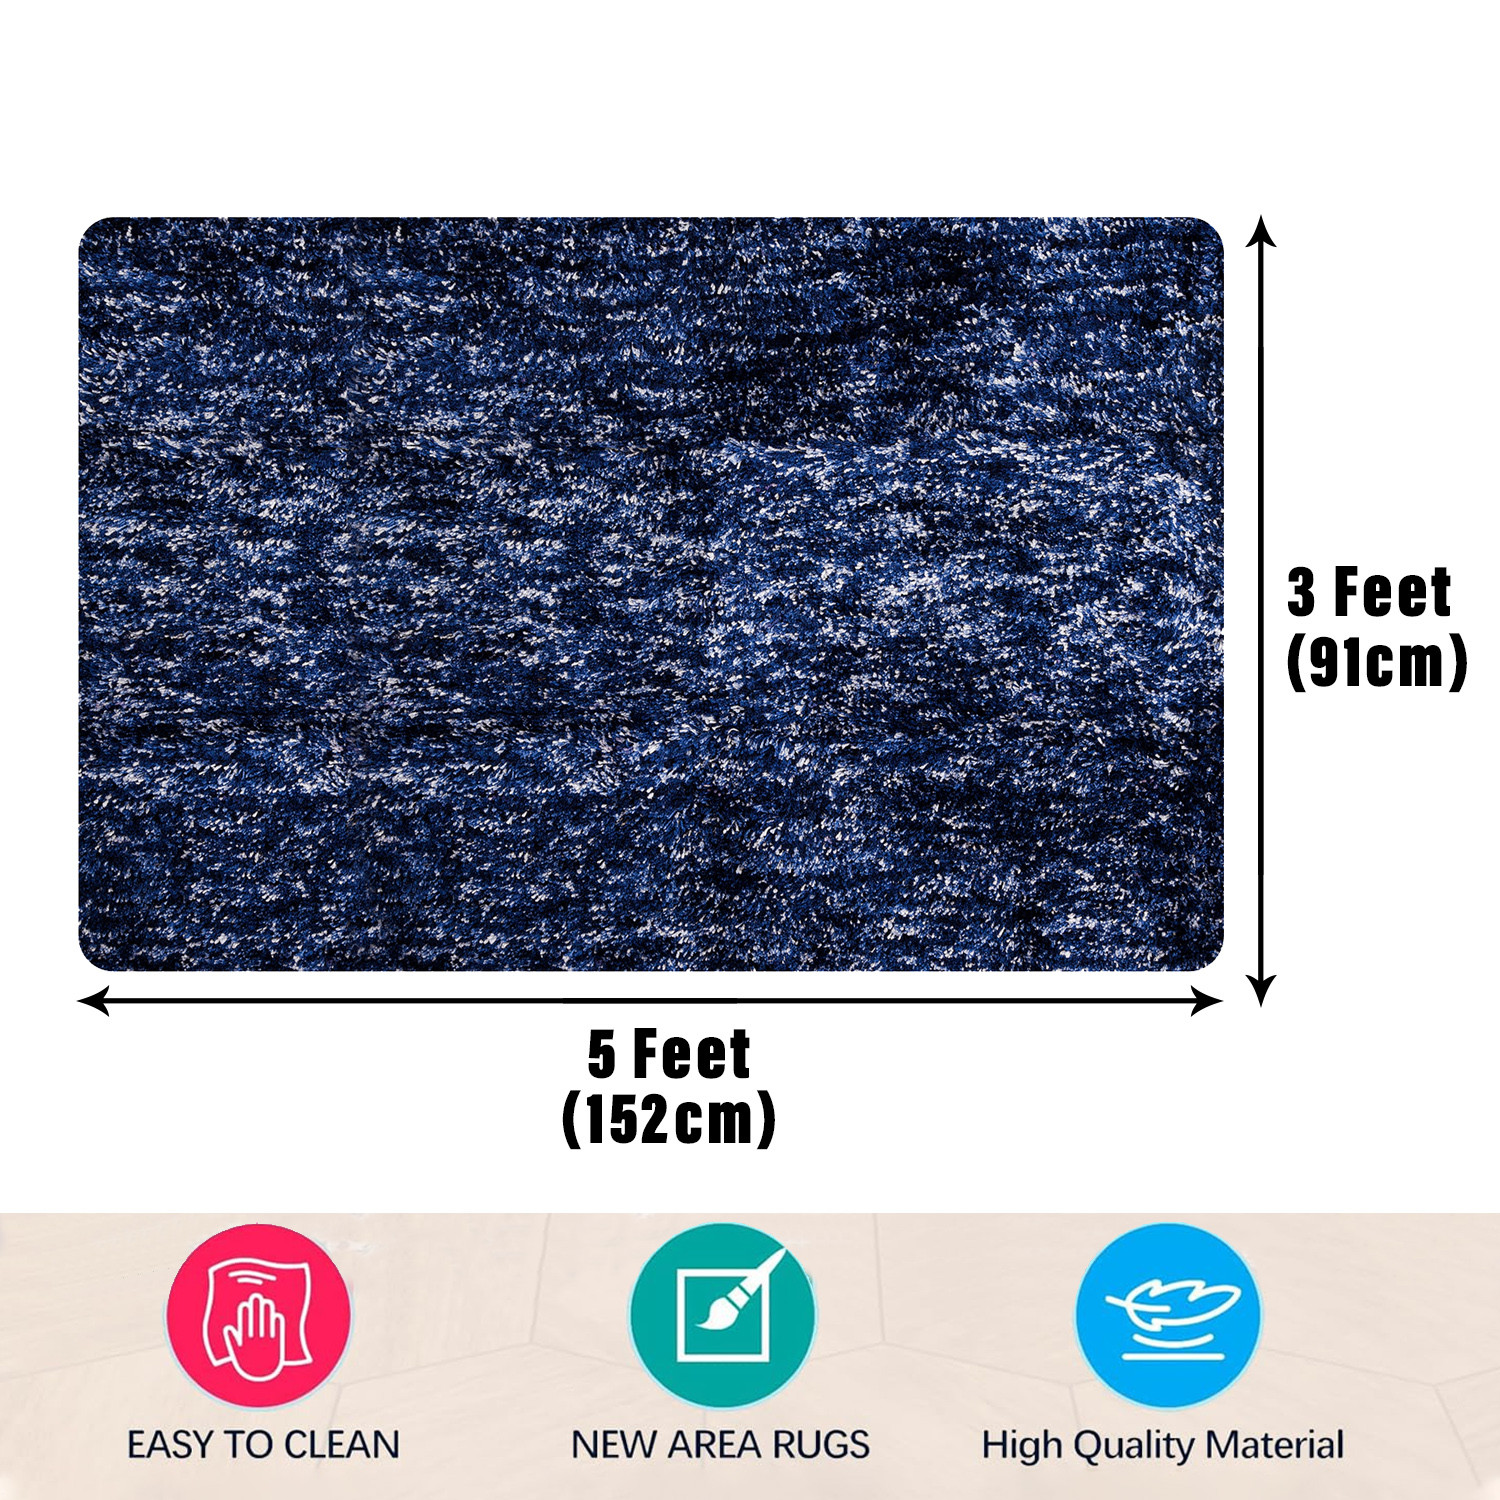 Kuber Industries Carpet | Shaggy Carpet for Living Room | Fluffy Carpet for Bedroom | Lexus Home Decor Carpet | Floor Carpet Rug | Non-Slip Bedside Rug | 3x5 Feet | Blue